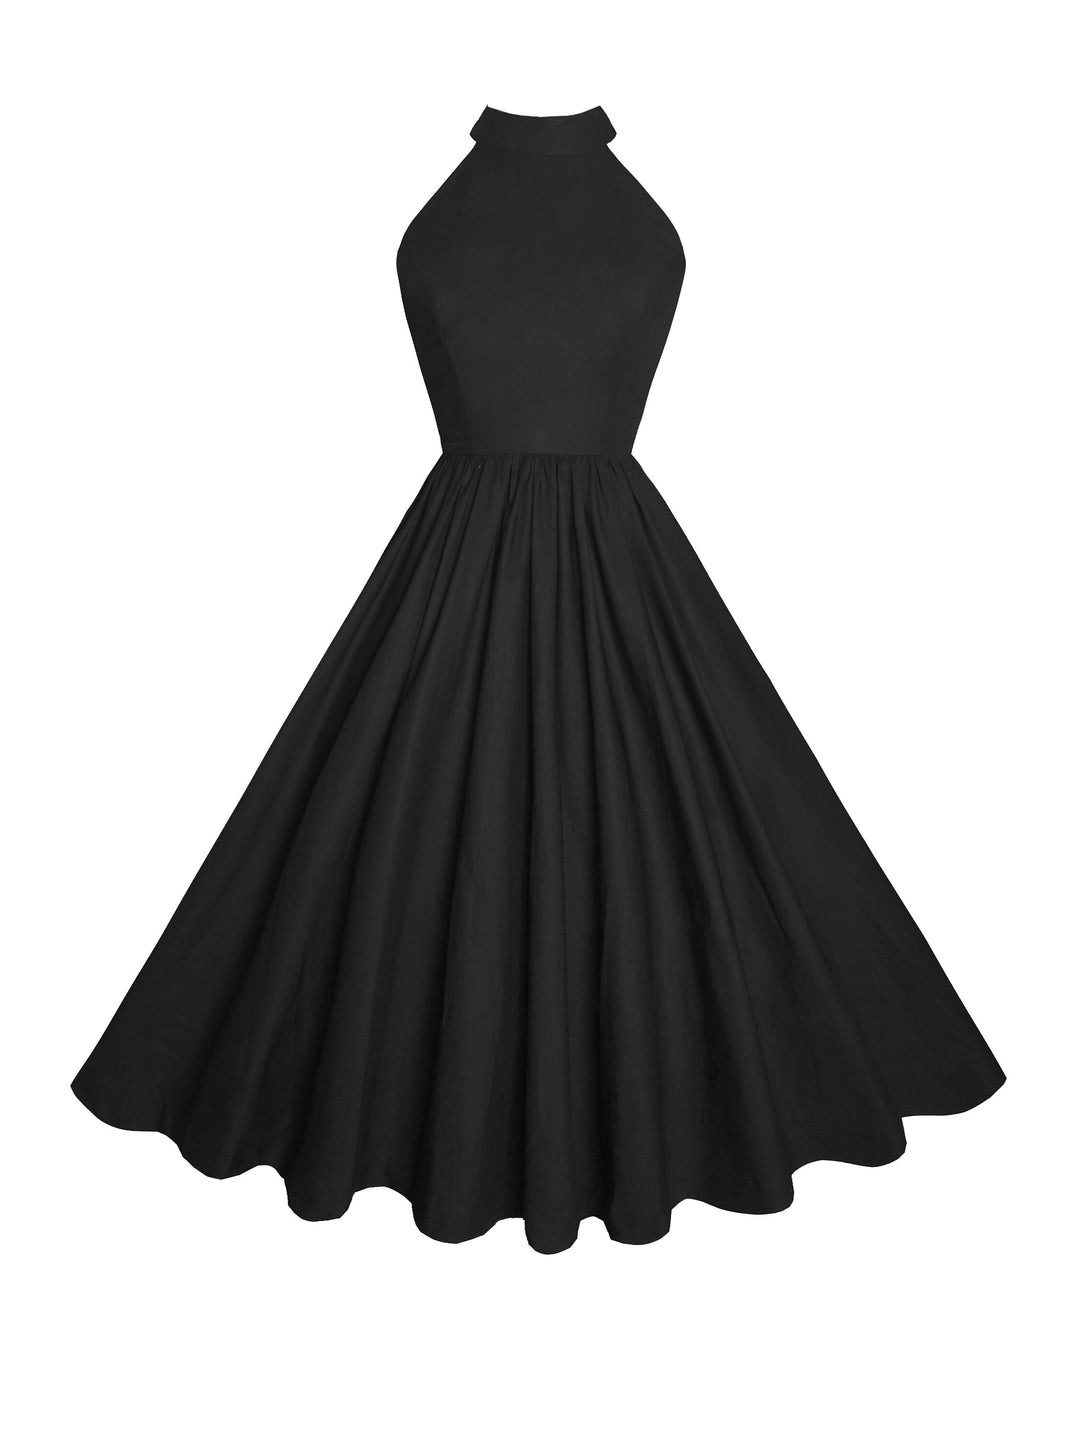 RTS - Size S - Rita Dress in Raven Black Cotton